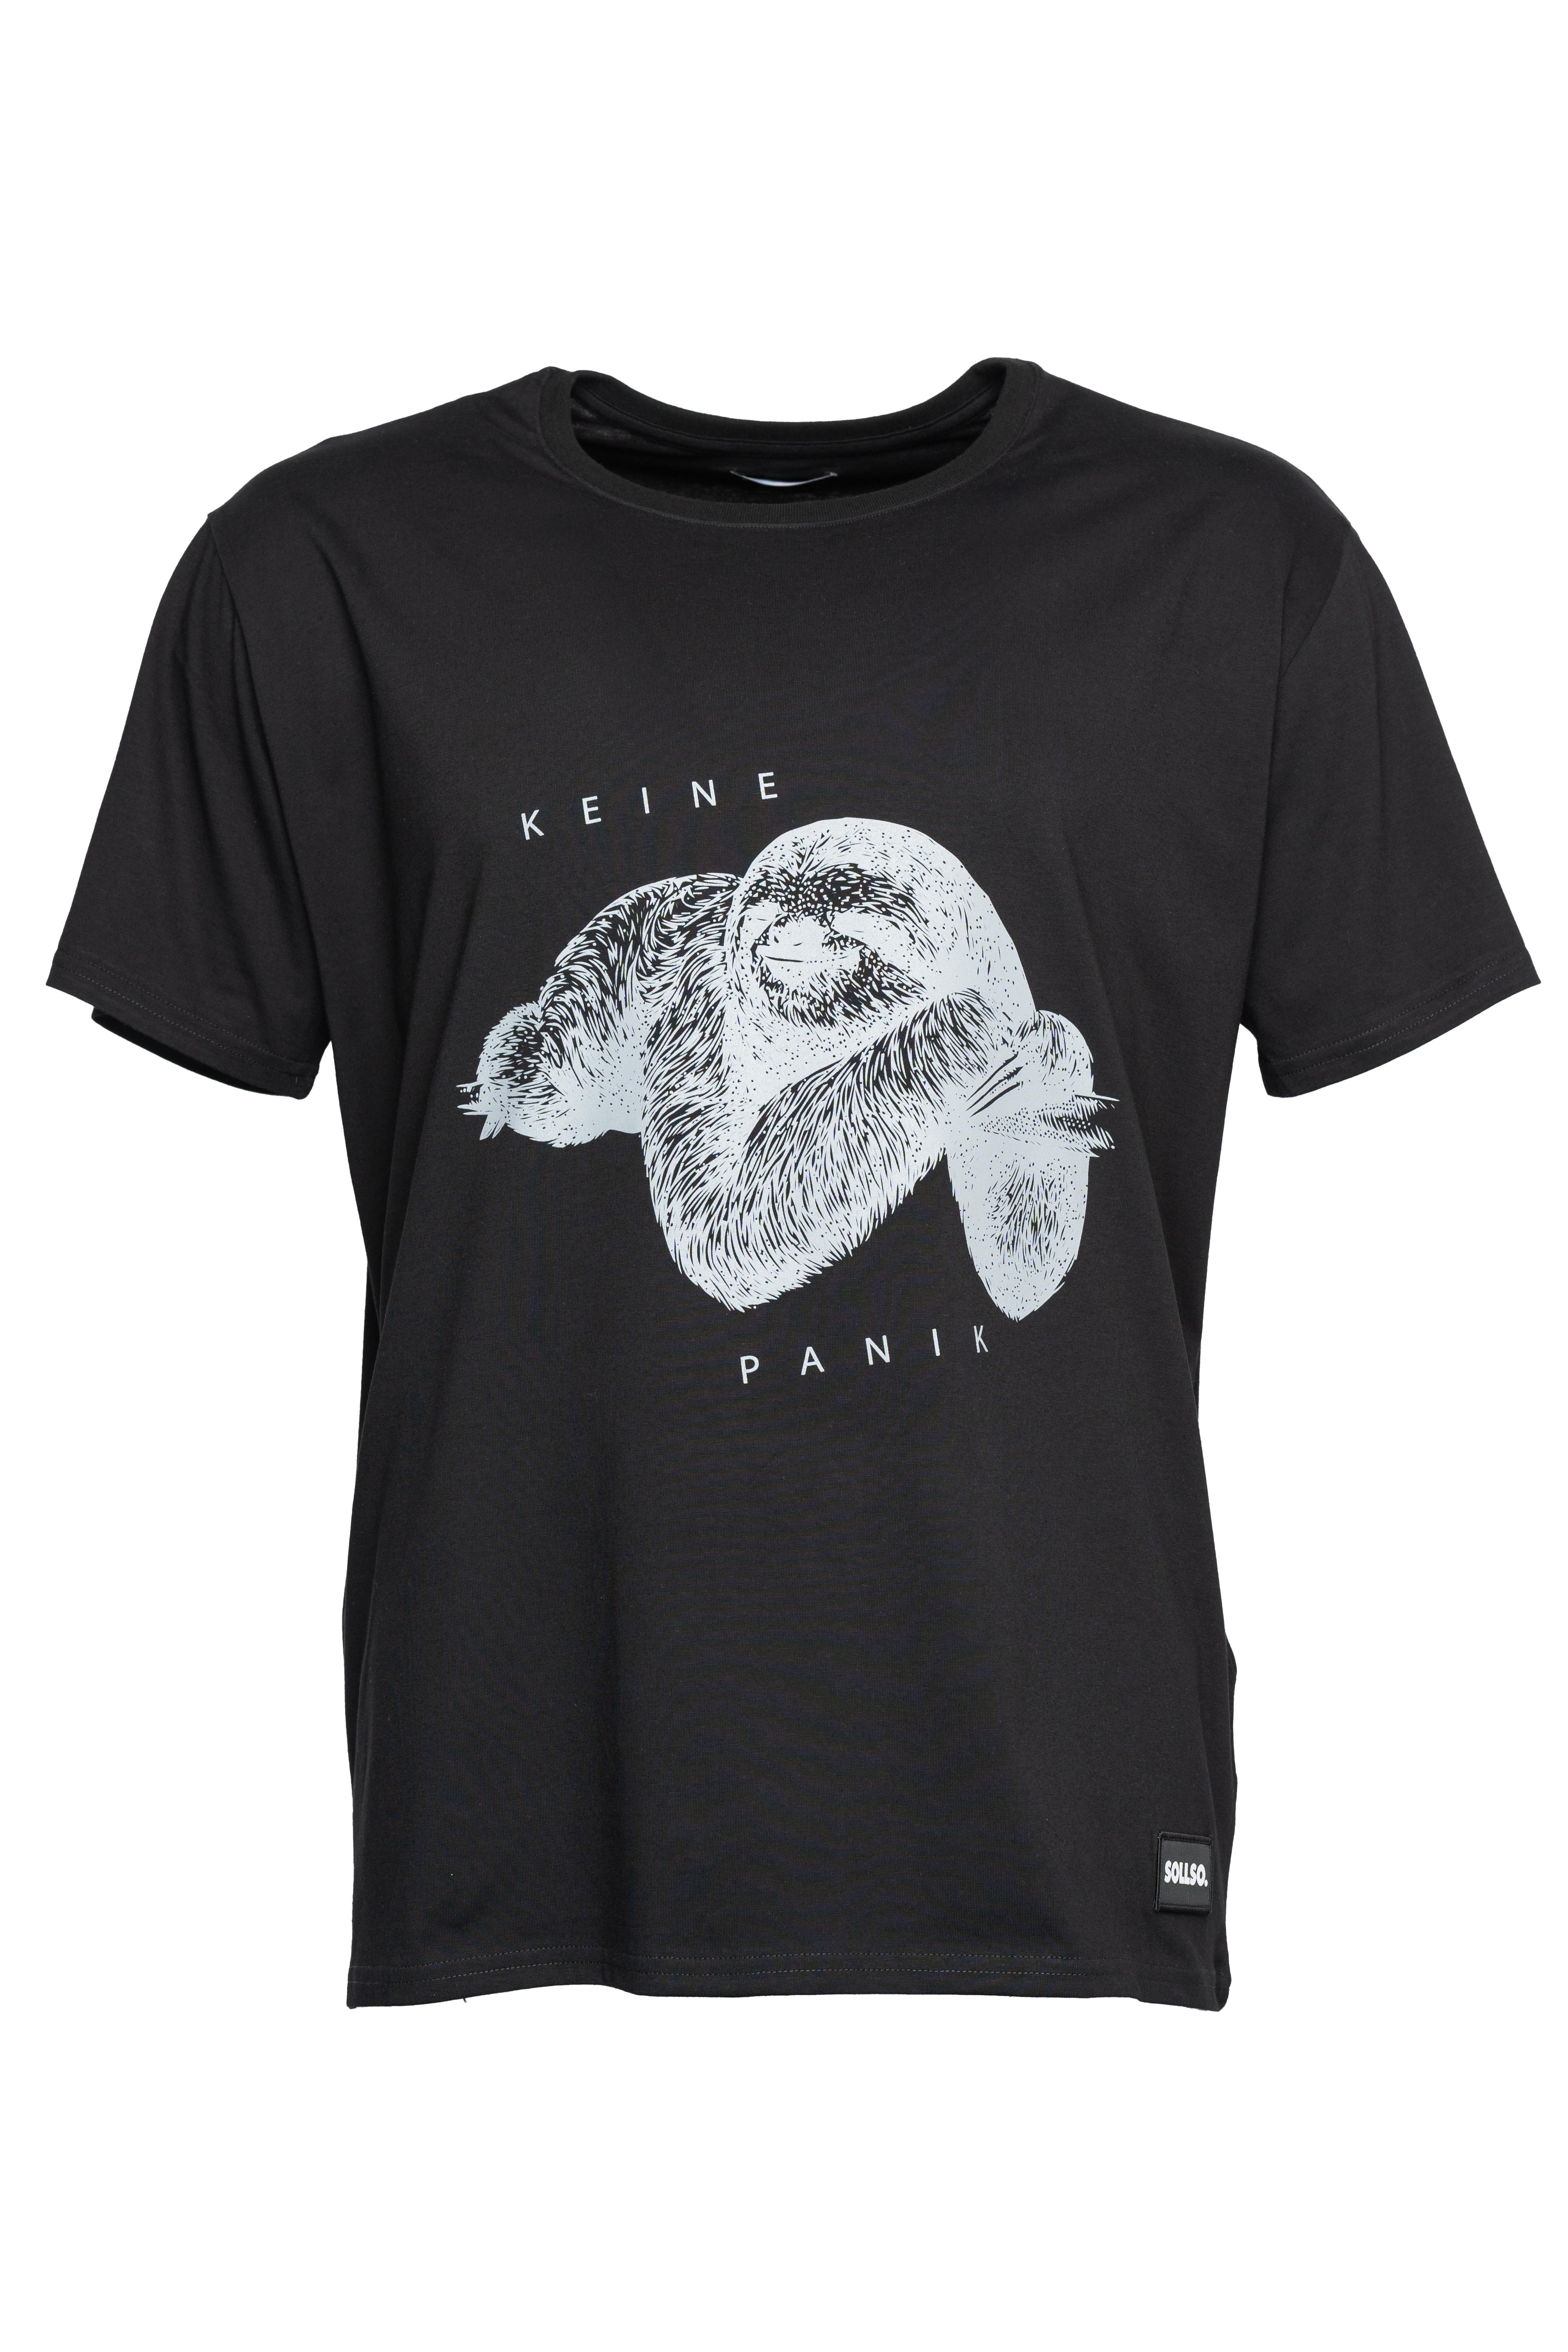 SOLLSO. T-Shirt "Keine Panik Faultier", Farbe Dark Black, Größe 8XL